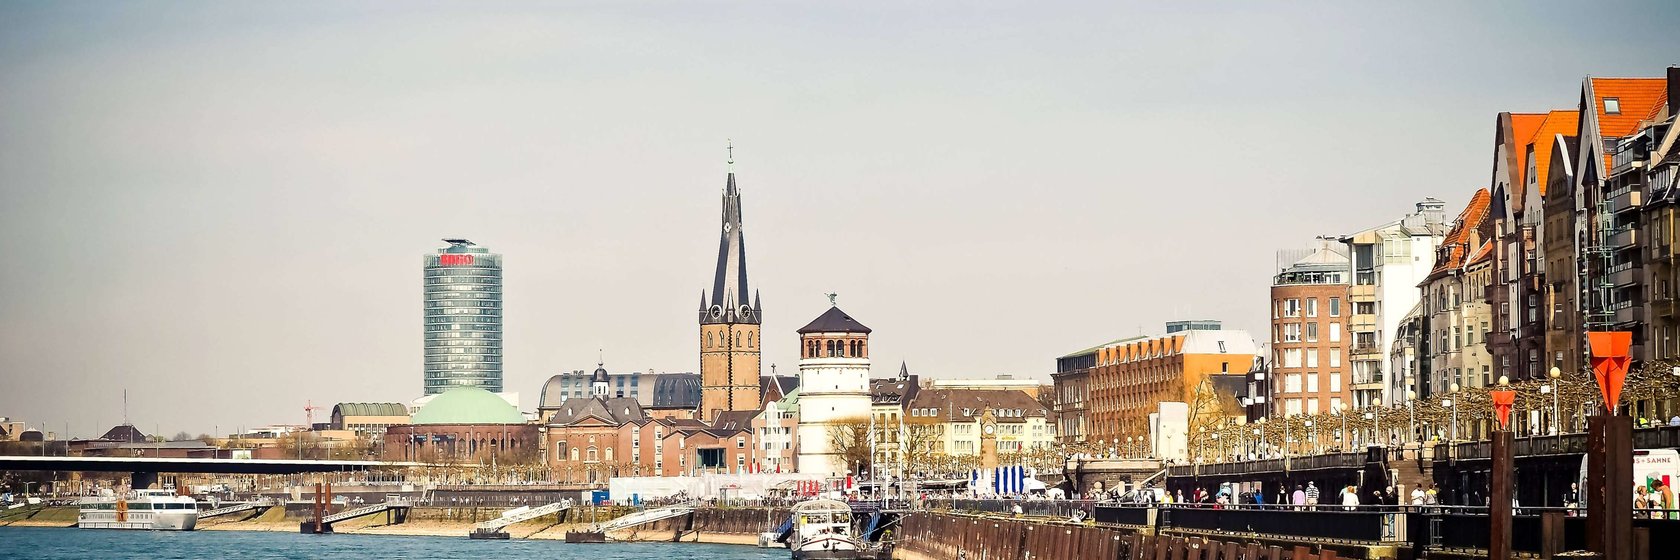 Tipy na výlety v Düsseldorfu